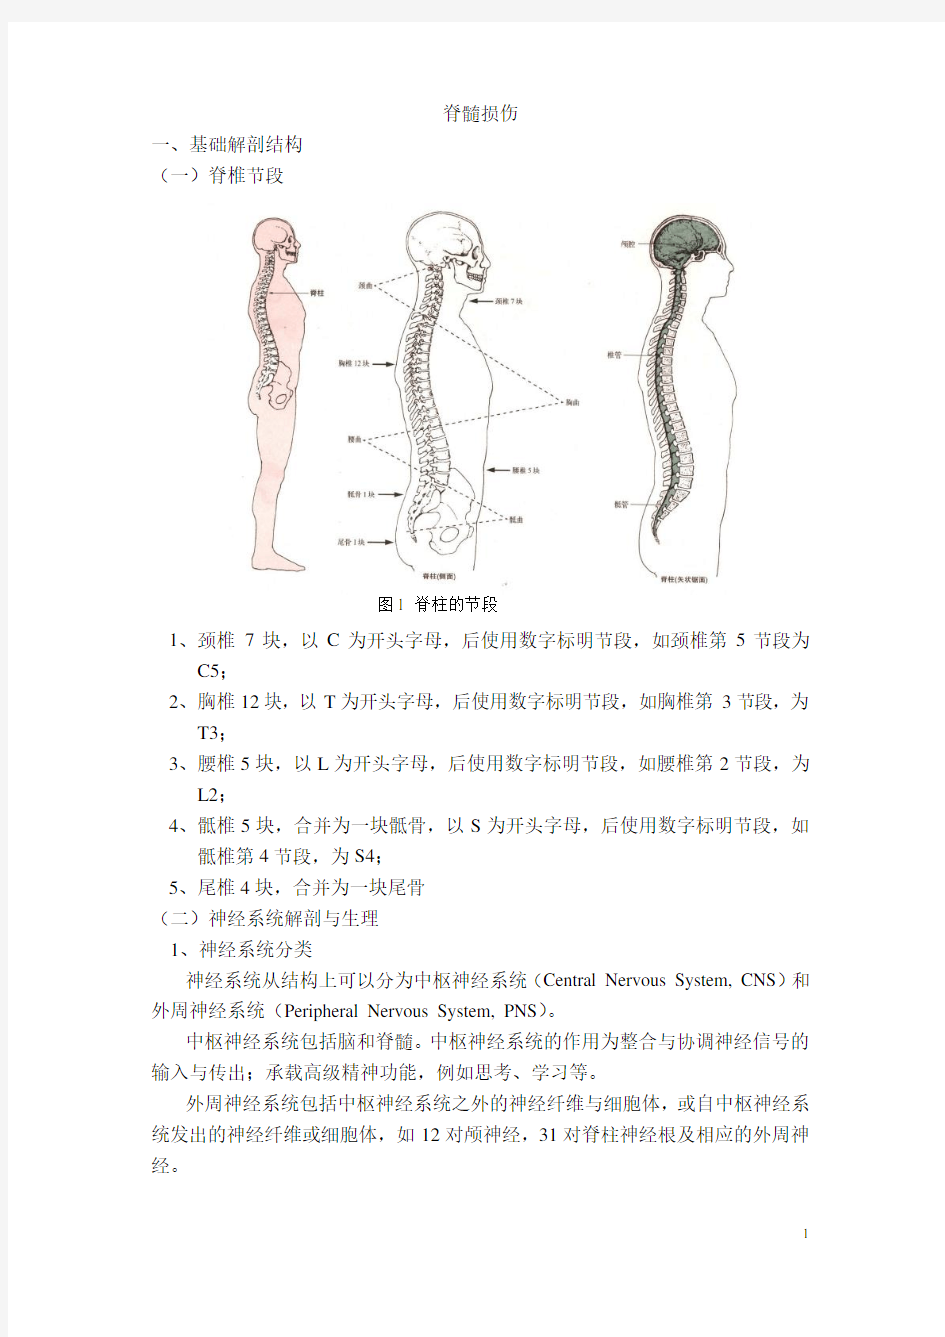 2-1 脊髓损伤概述